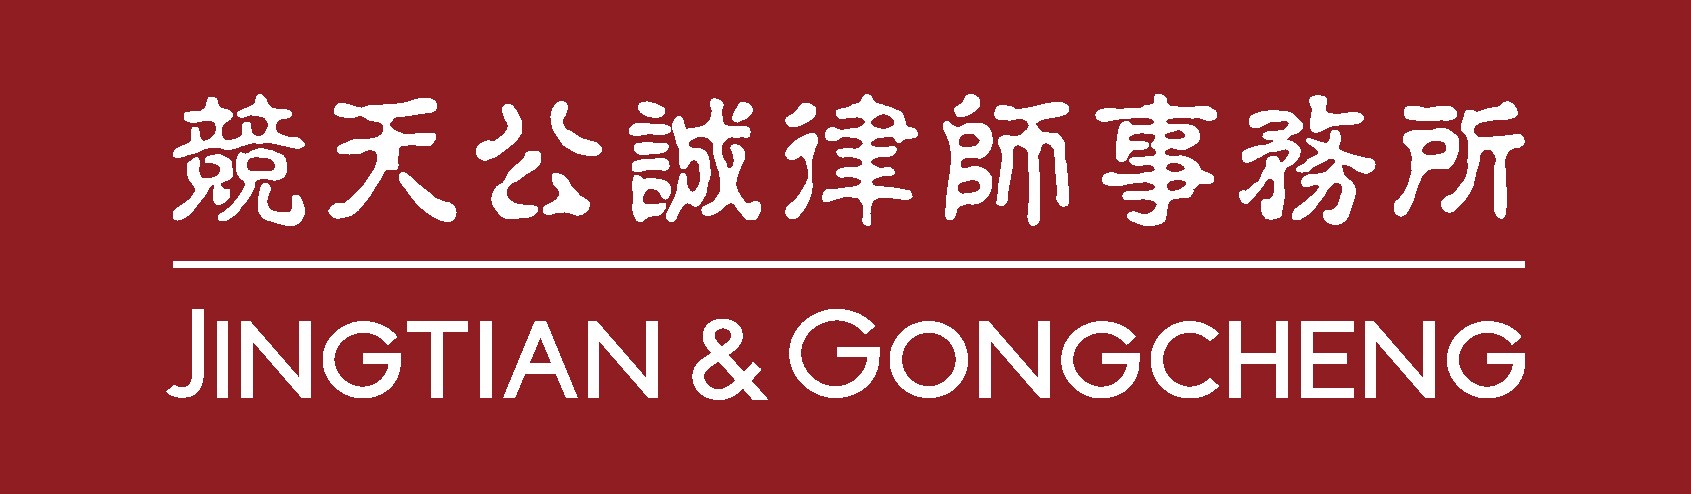 Jingtian & Gongcheng 2